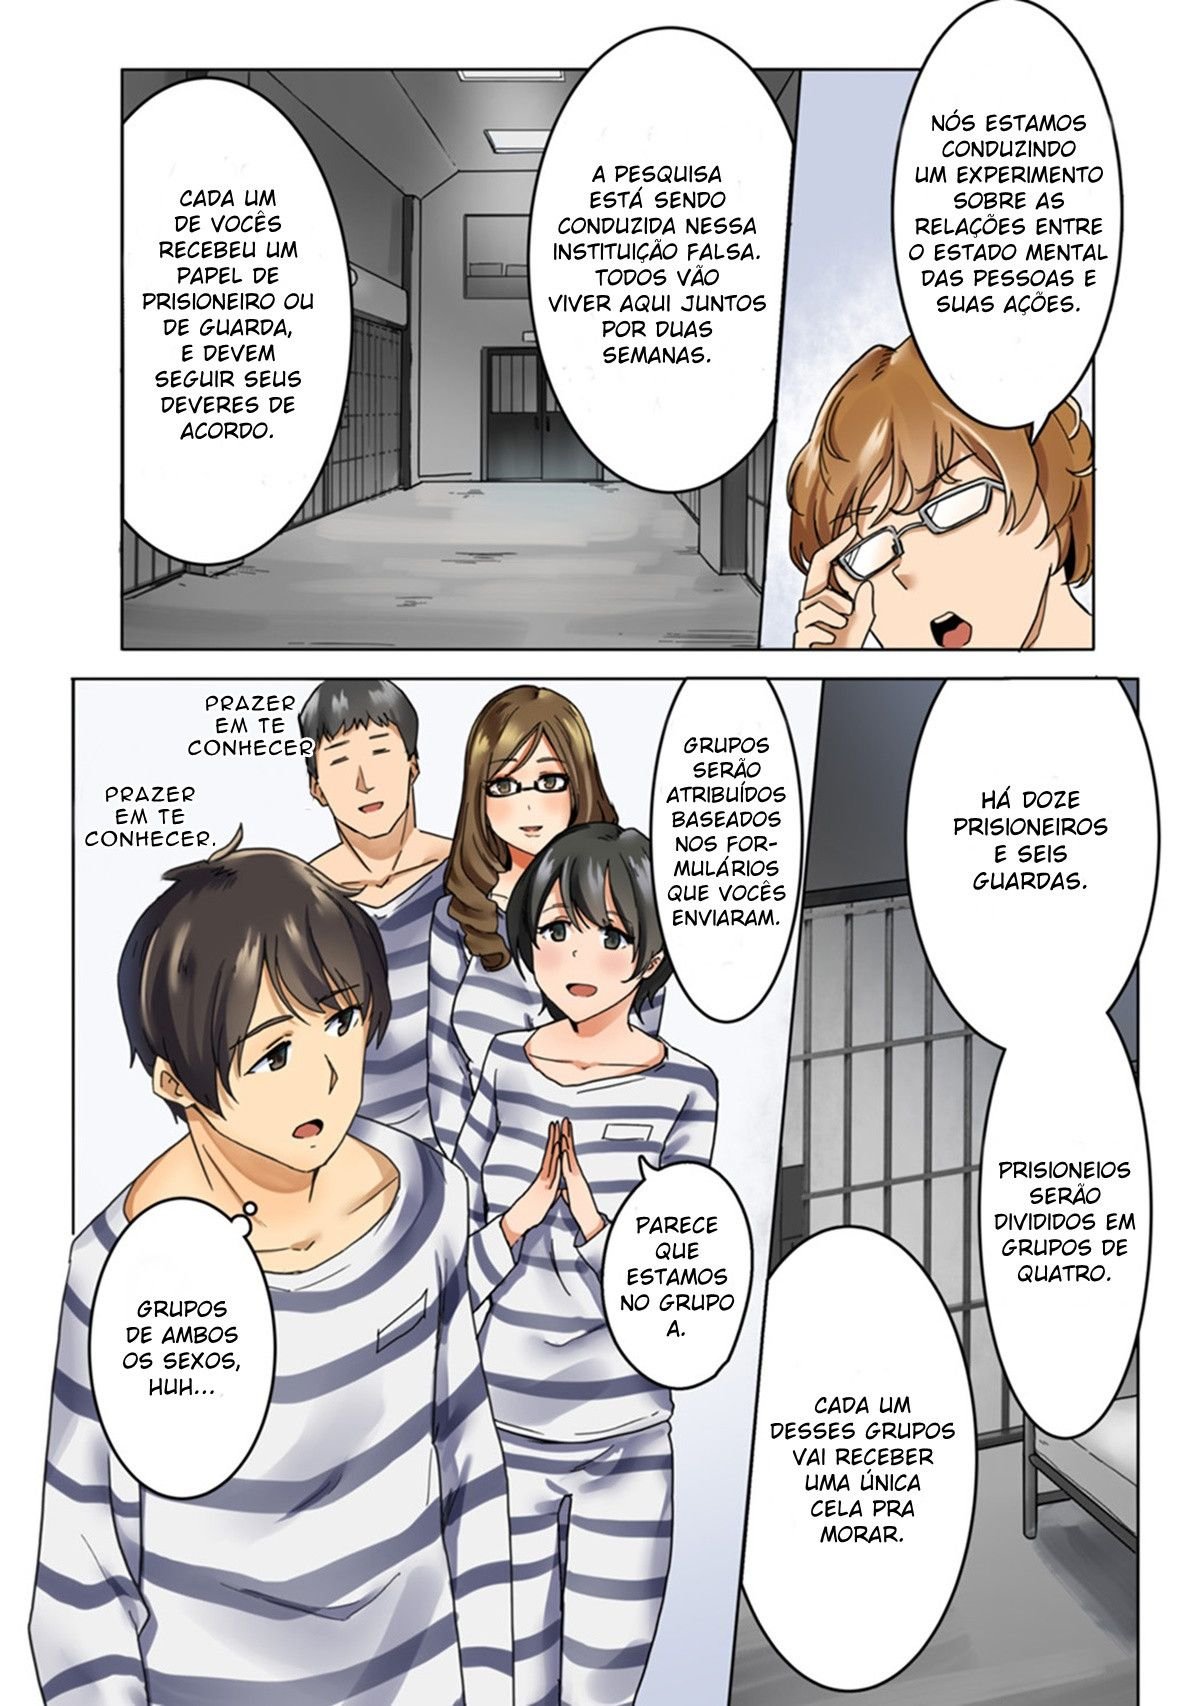 [Wakamatsu] Forçadas a Aceitar a Submissão na Prisão - Foto 5